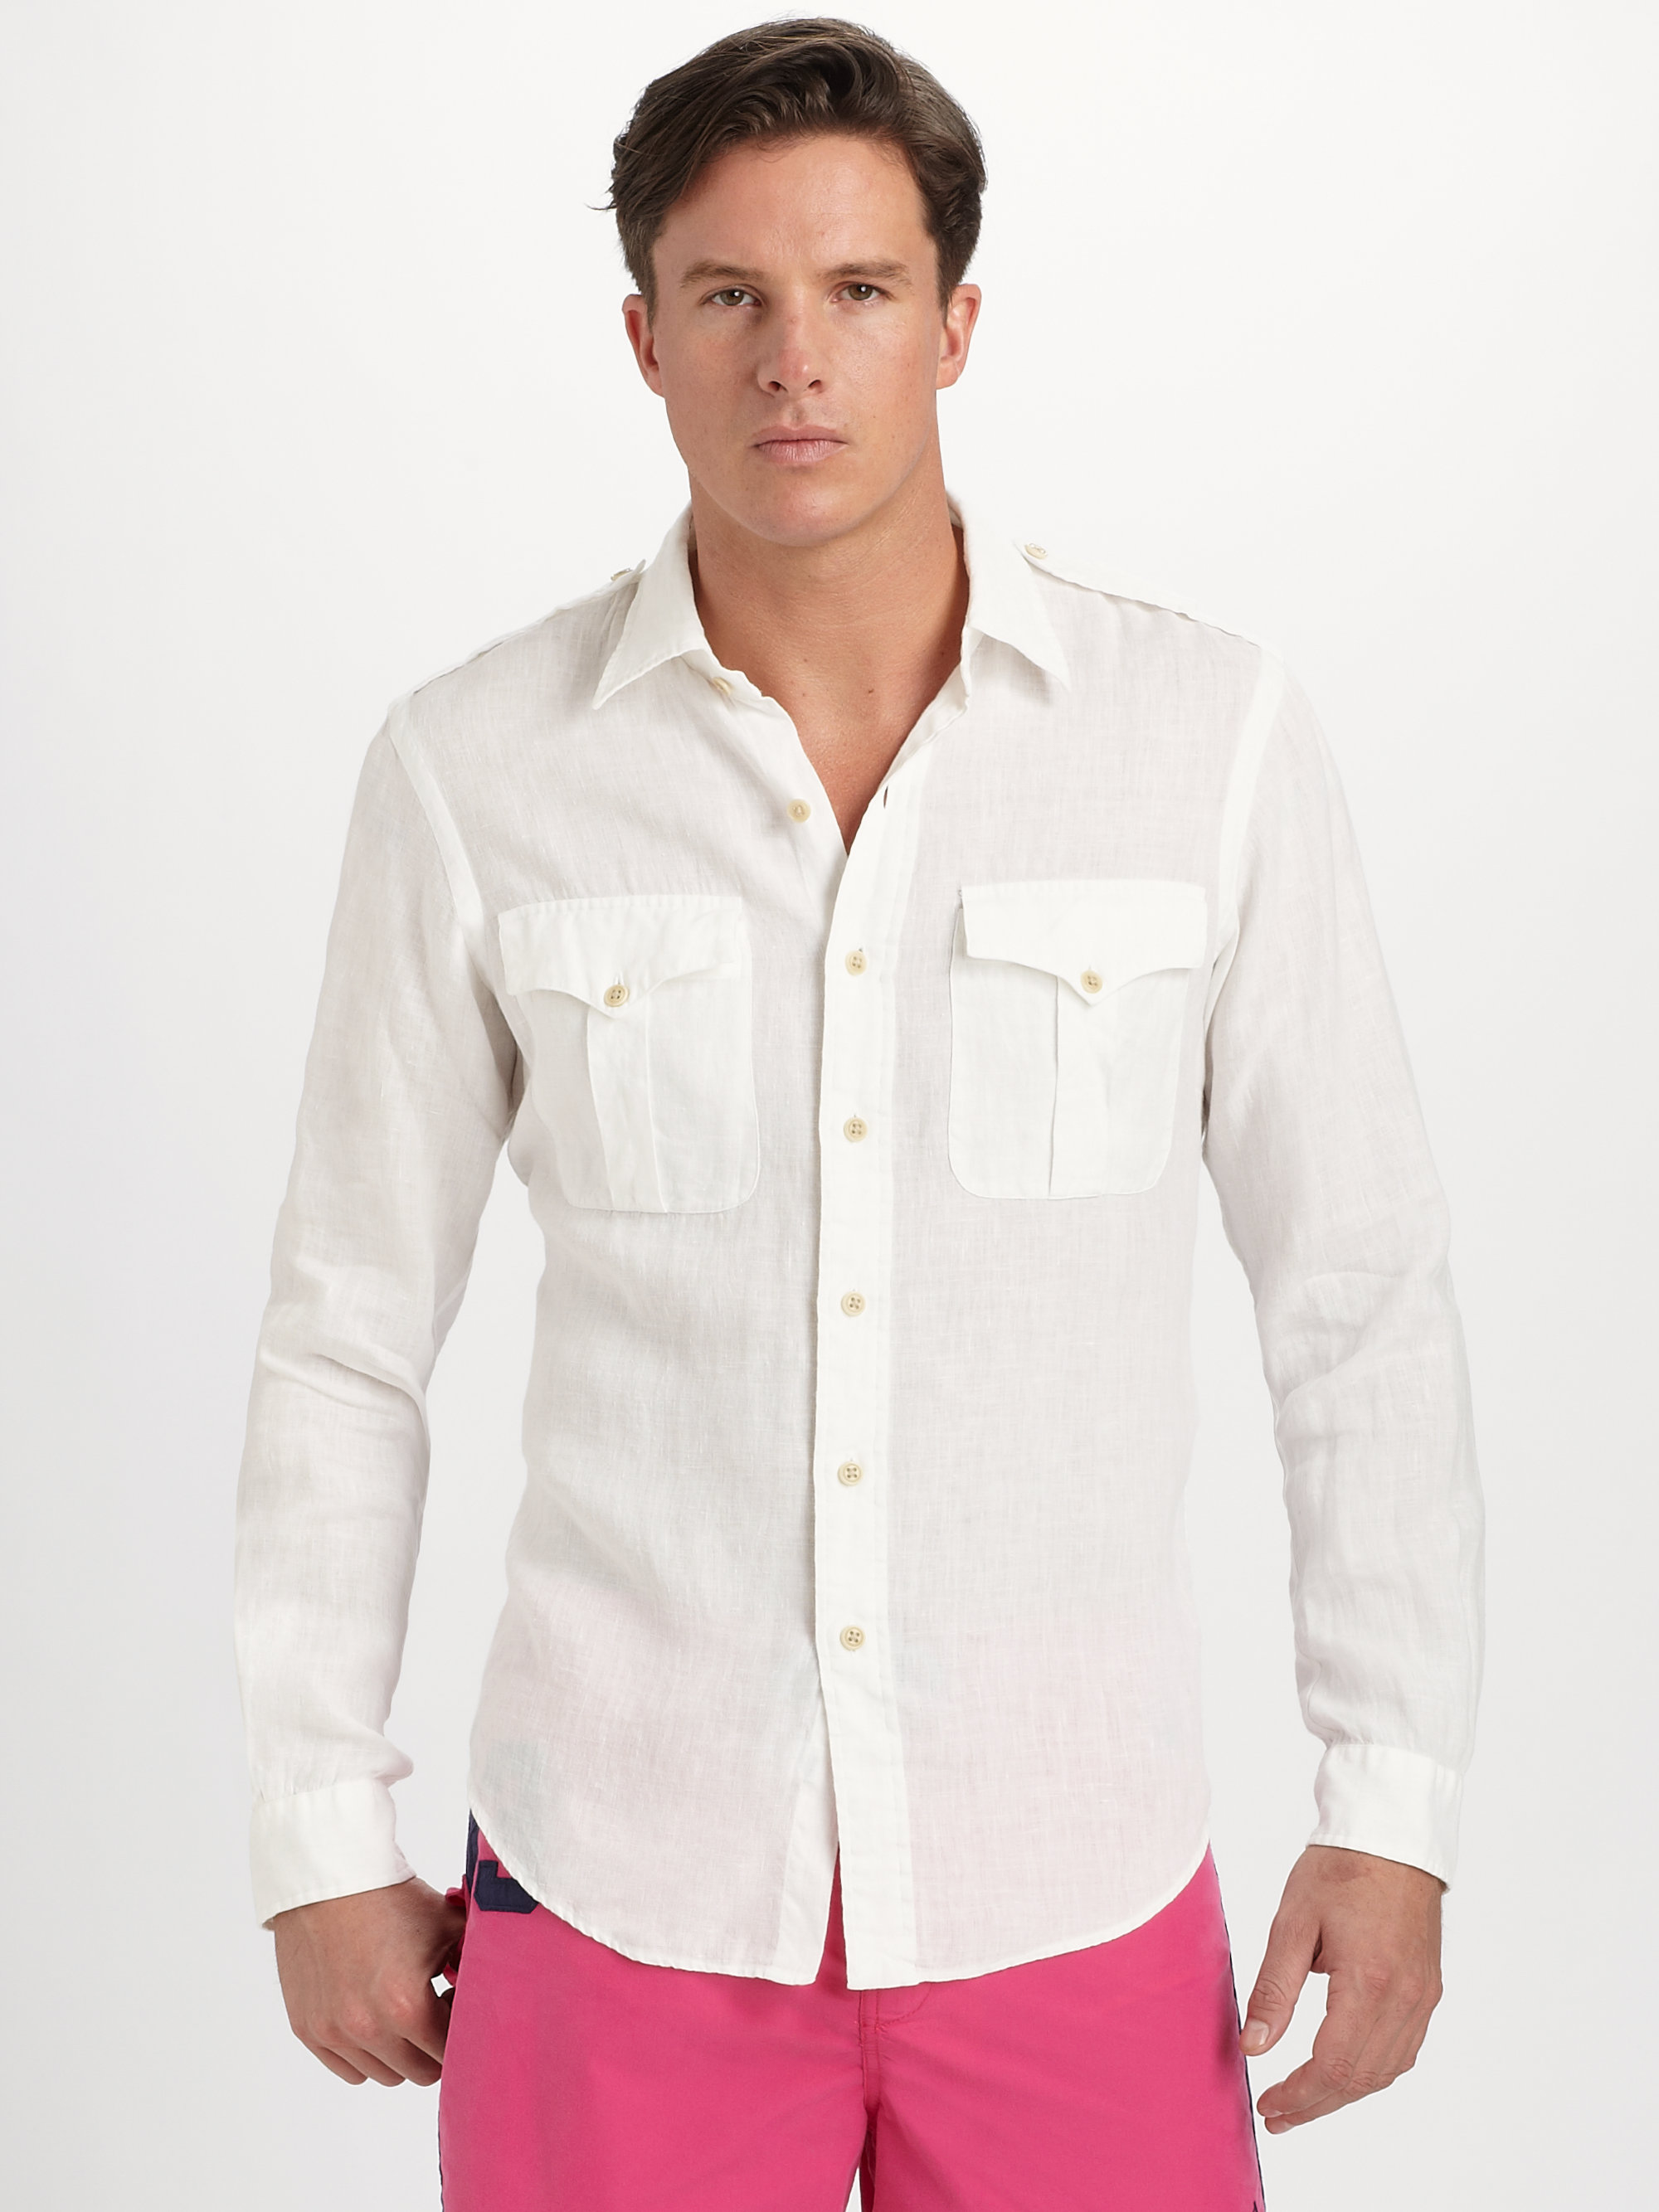 ralph lauren white linen shirt